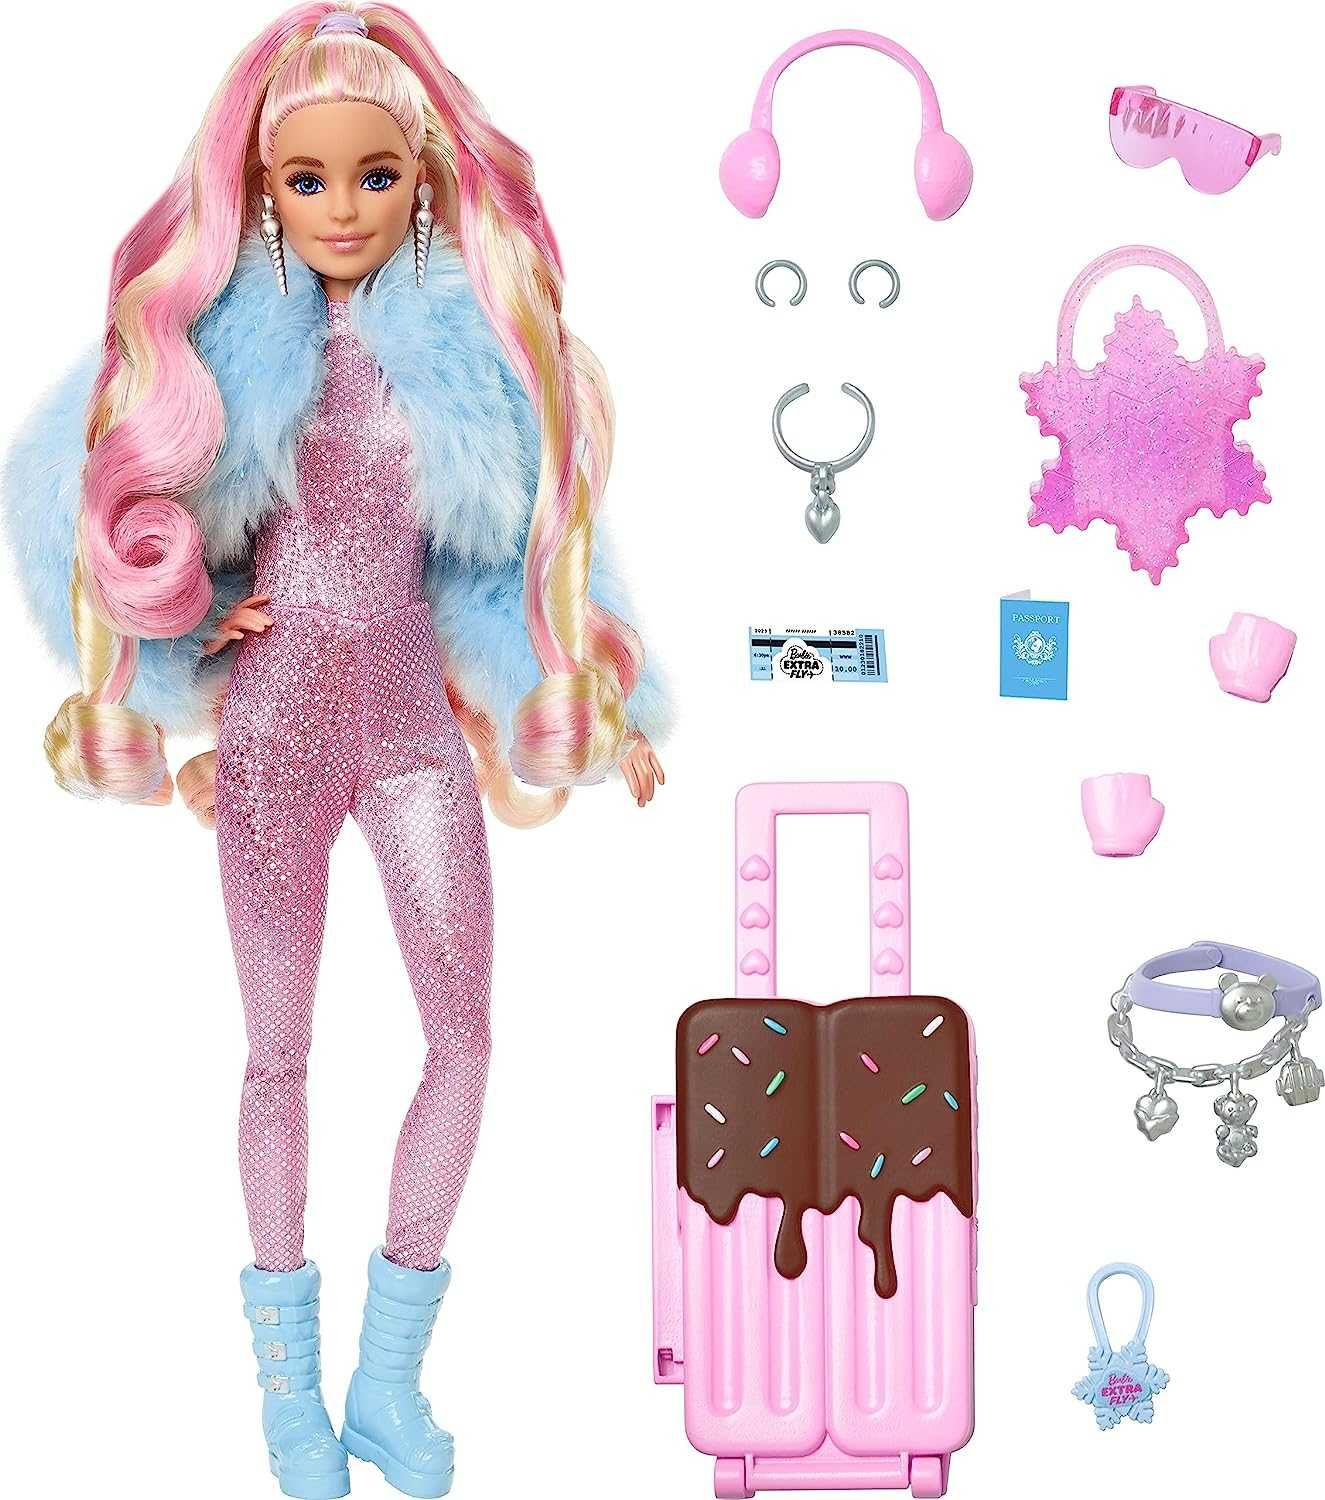 ОРИГИНАЛ! Кукла Барби Экстра в зимнем наряде Barbie Extra Fly Snow